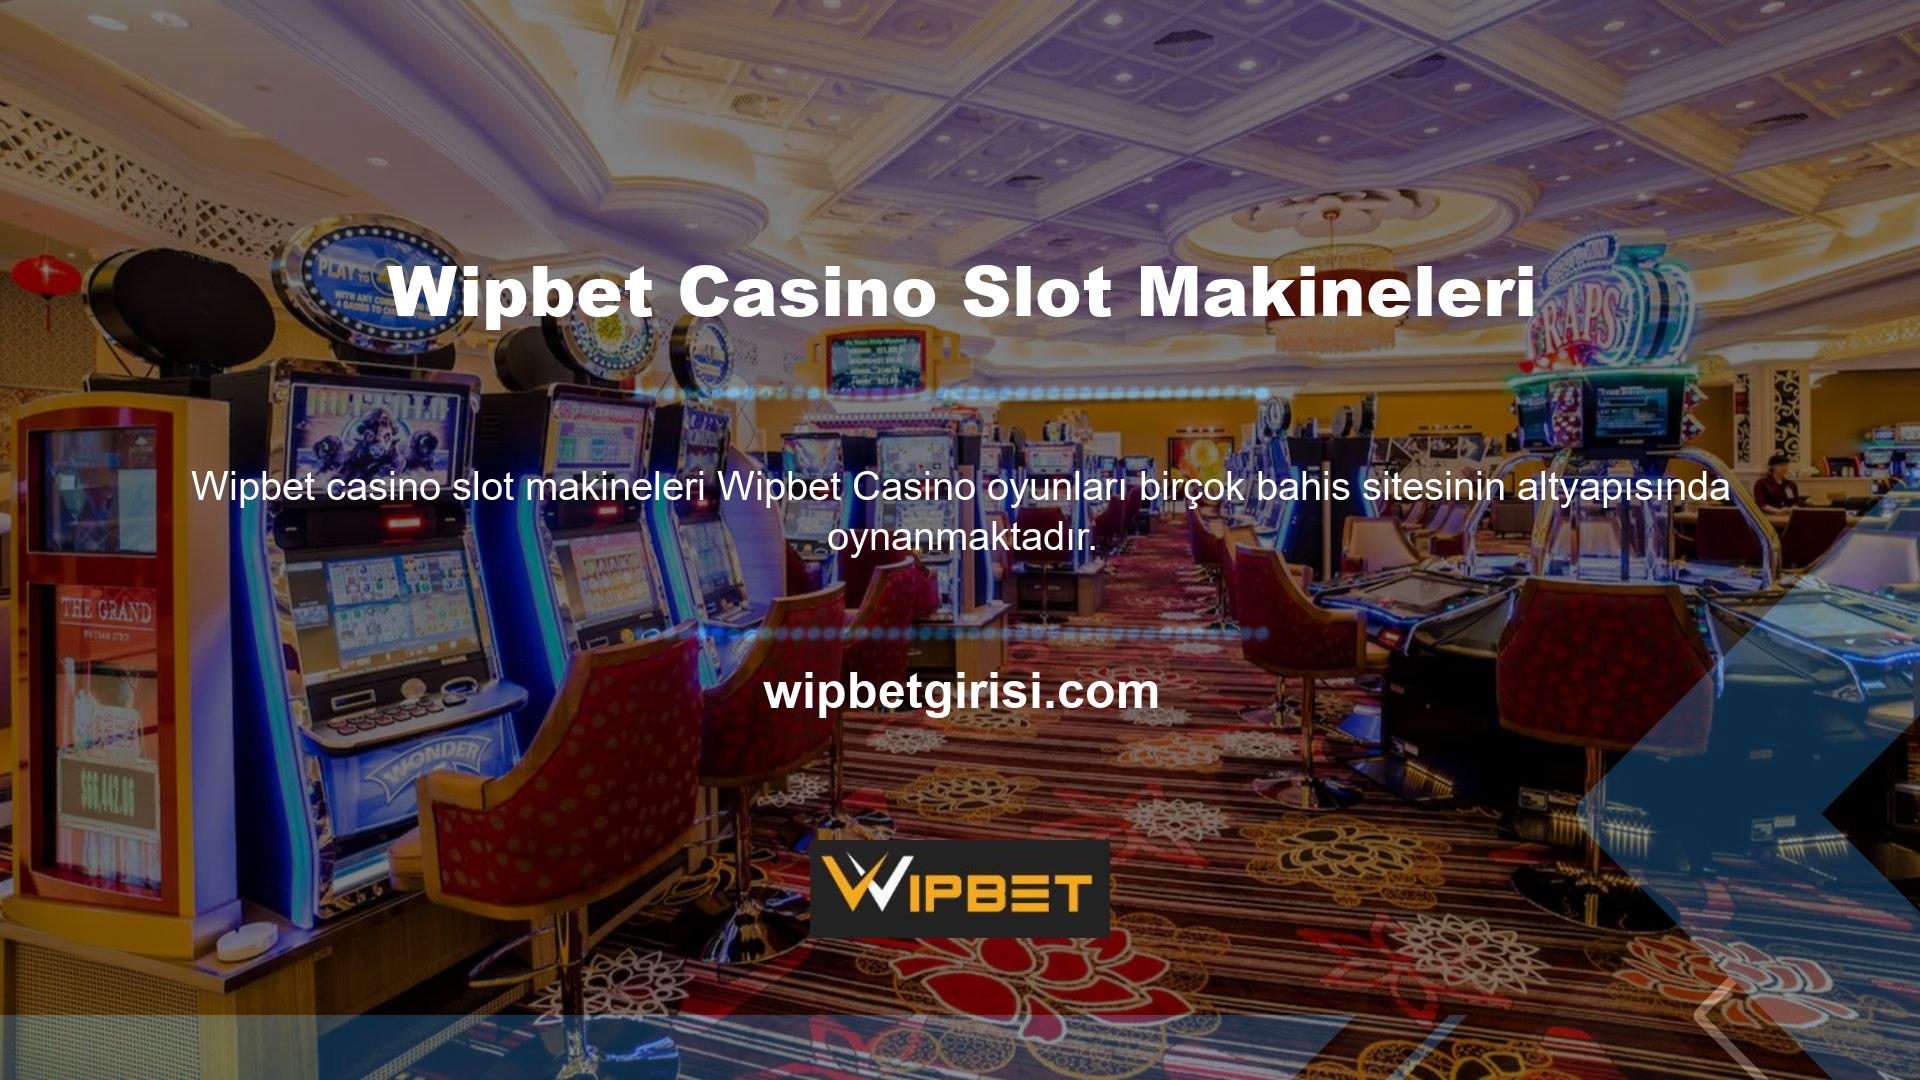 Wipbet sektörün en büyük şirketlerinden biri olduğu için casino sitesi kılığına giren saldırganlar mevcut